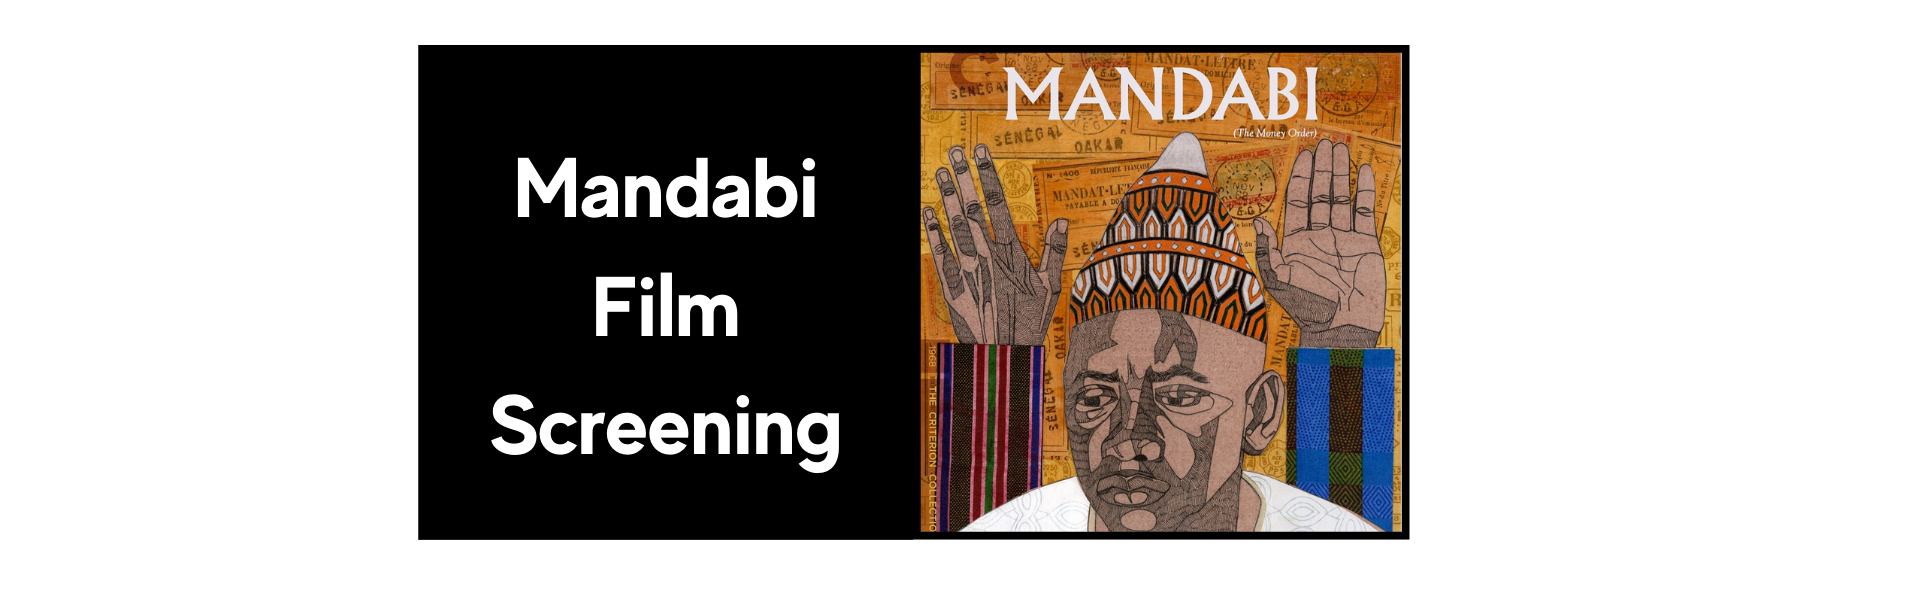 Mandabi-Film-Screening.png